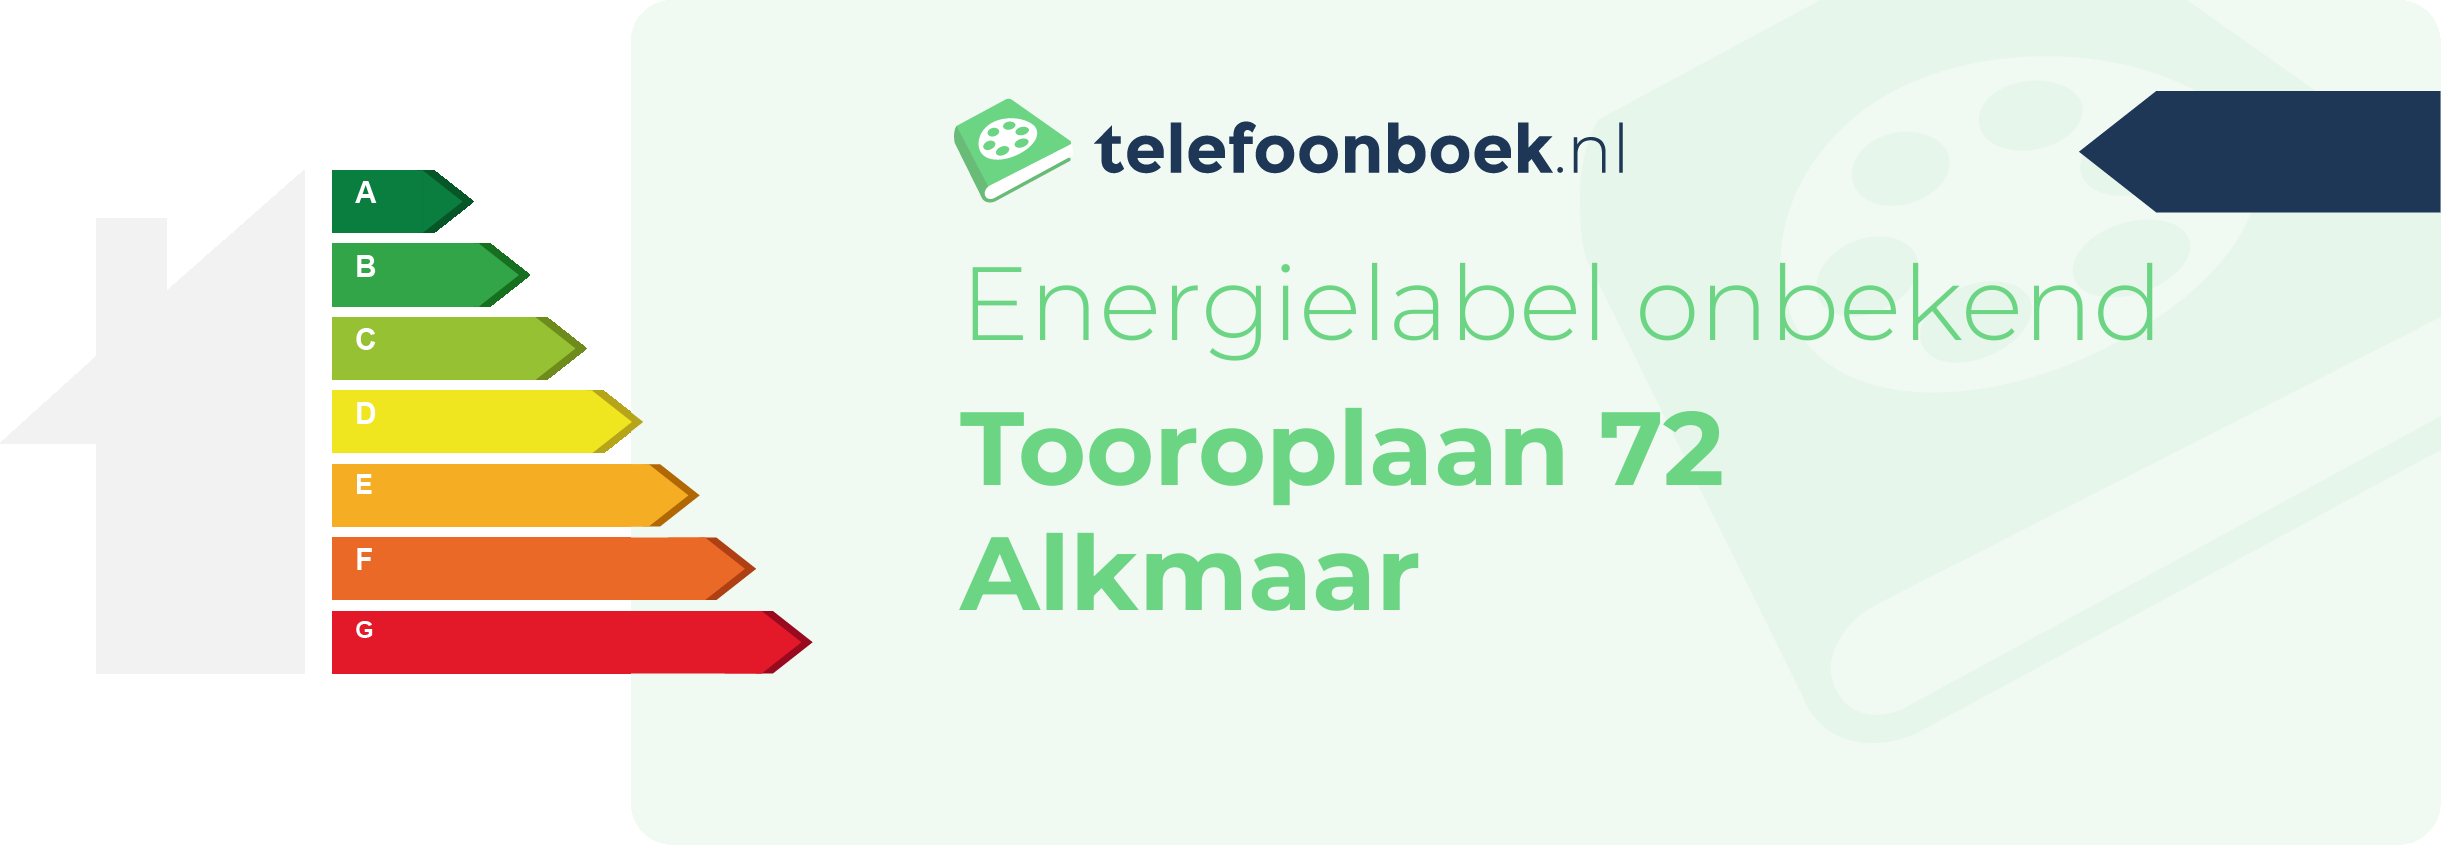 Energielabel Tooroplaan 72 Alkmaar